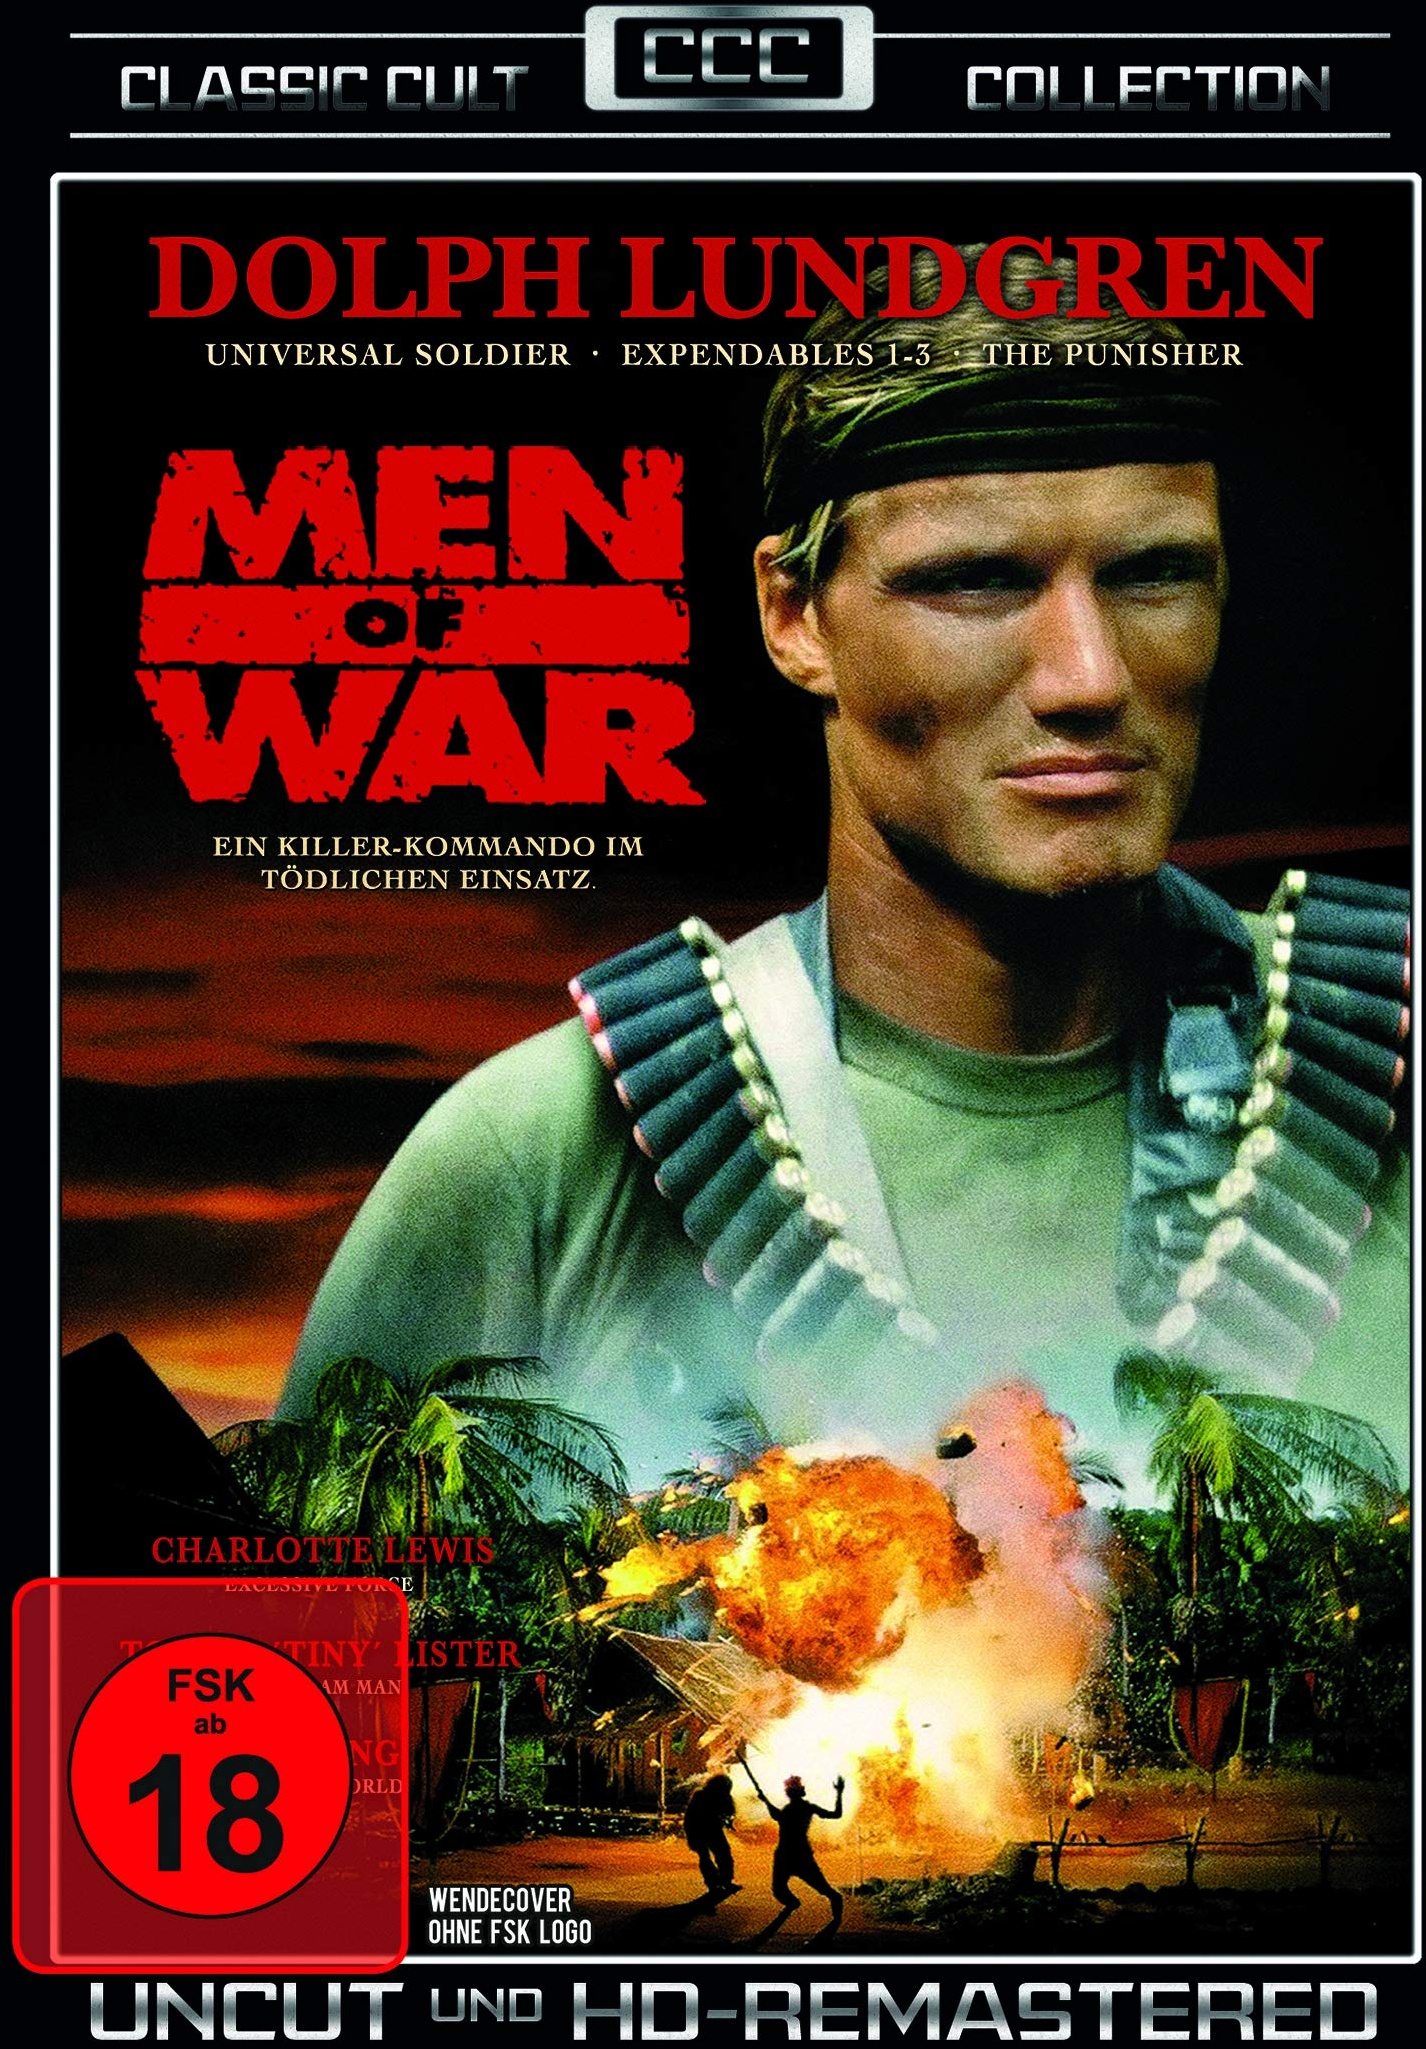 Men of War - Classic Cult Edition